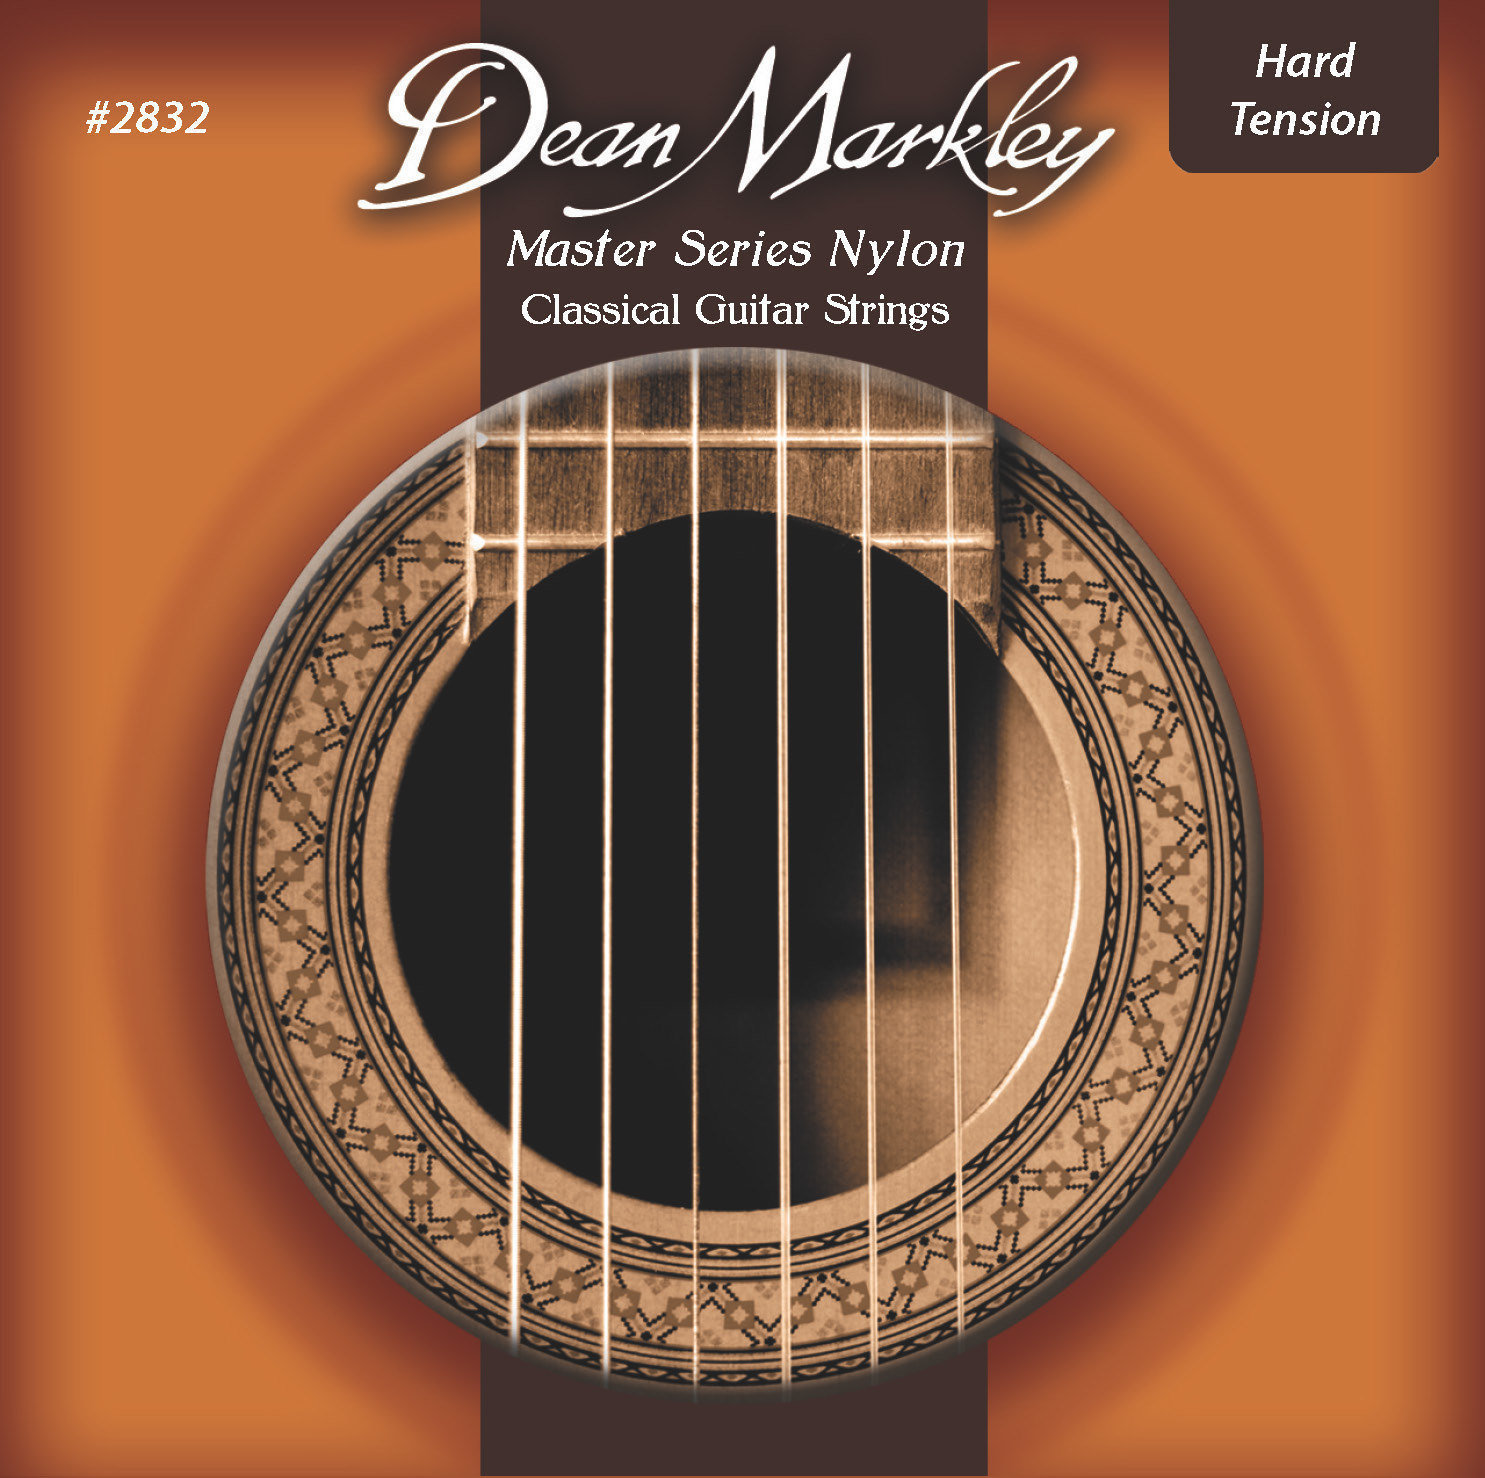 Nylonové struny pro klasickou kytaru Dean Markley 2832 HT